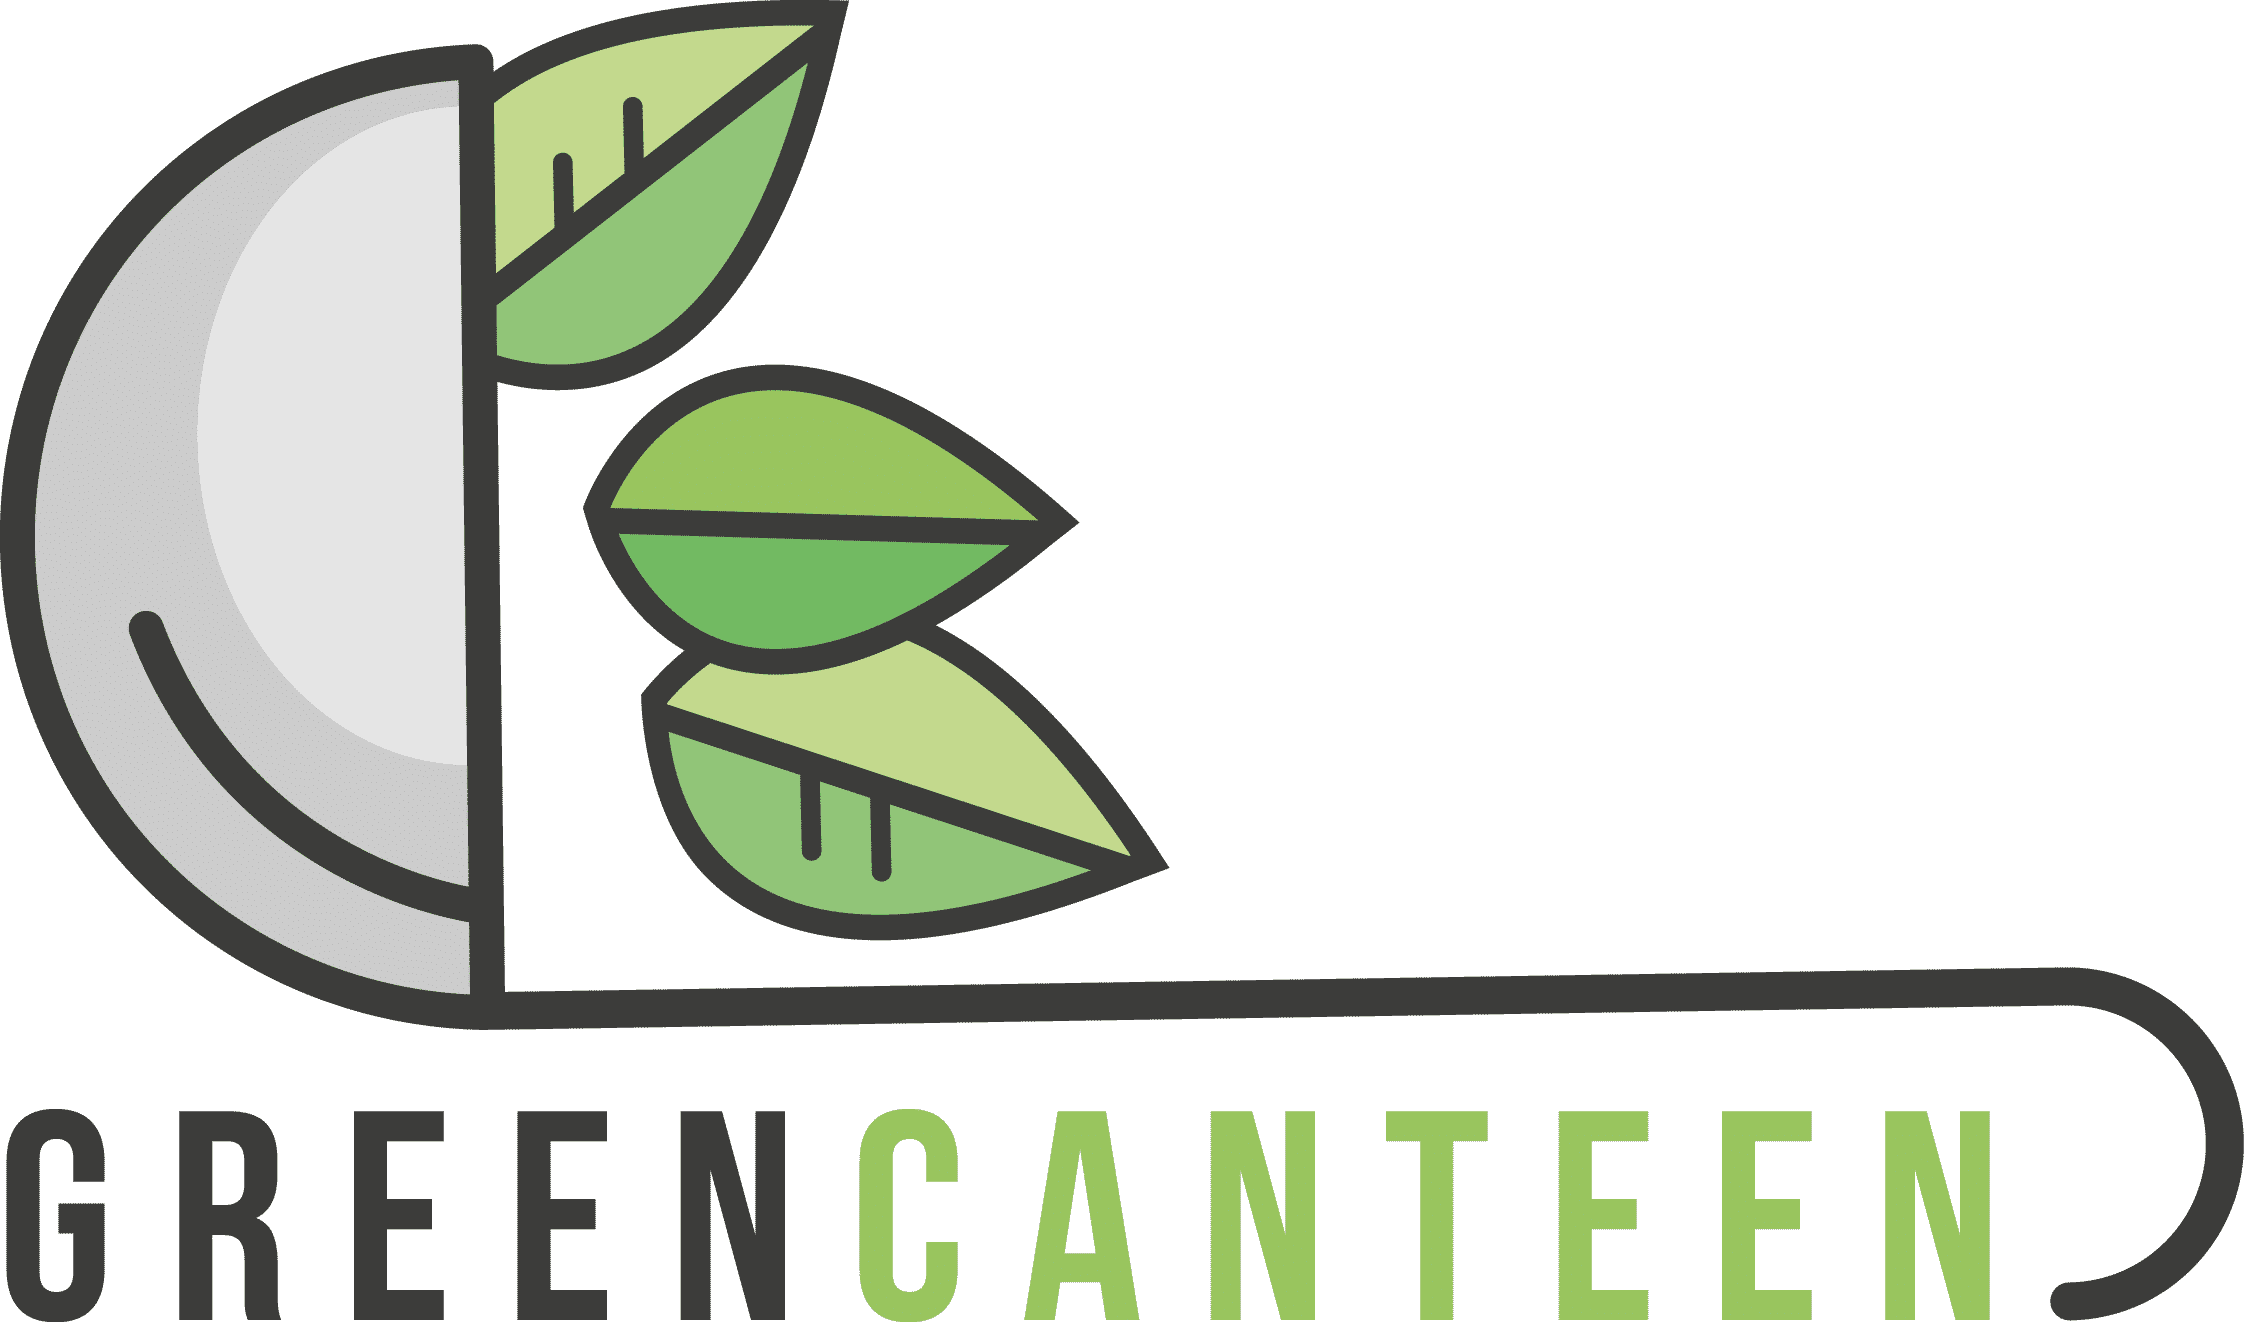 Green Canteen